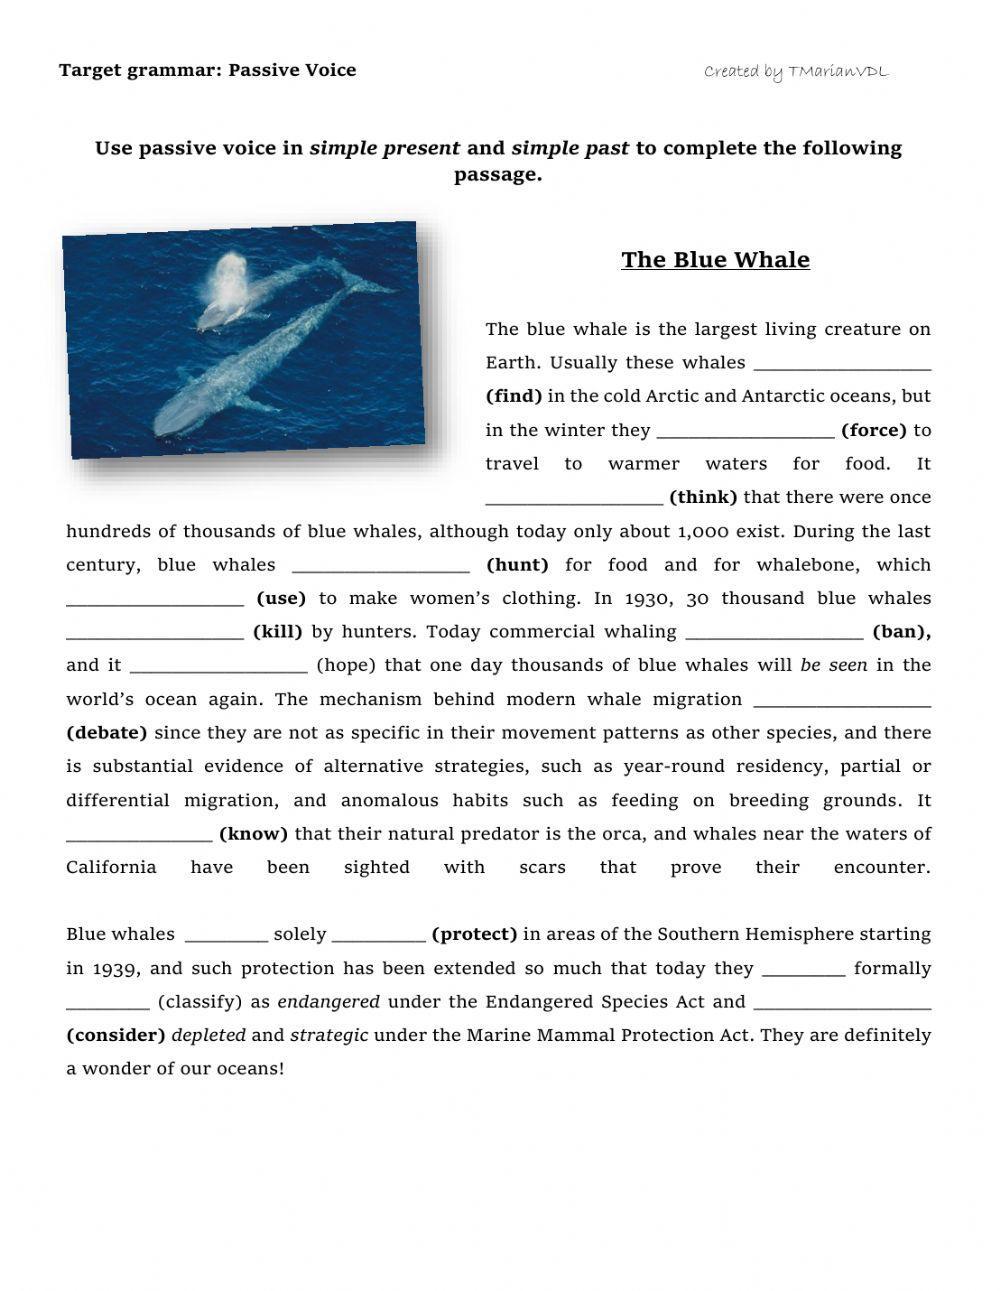 Passive Voice: The Blue Whale